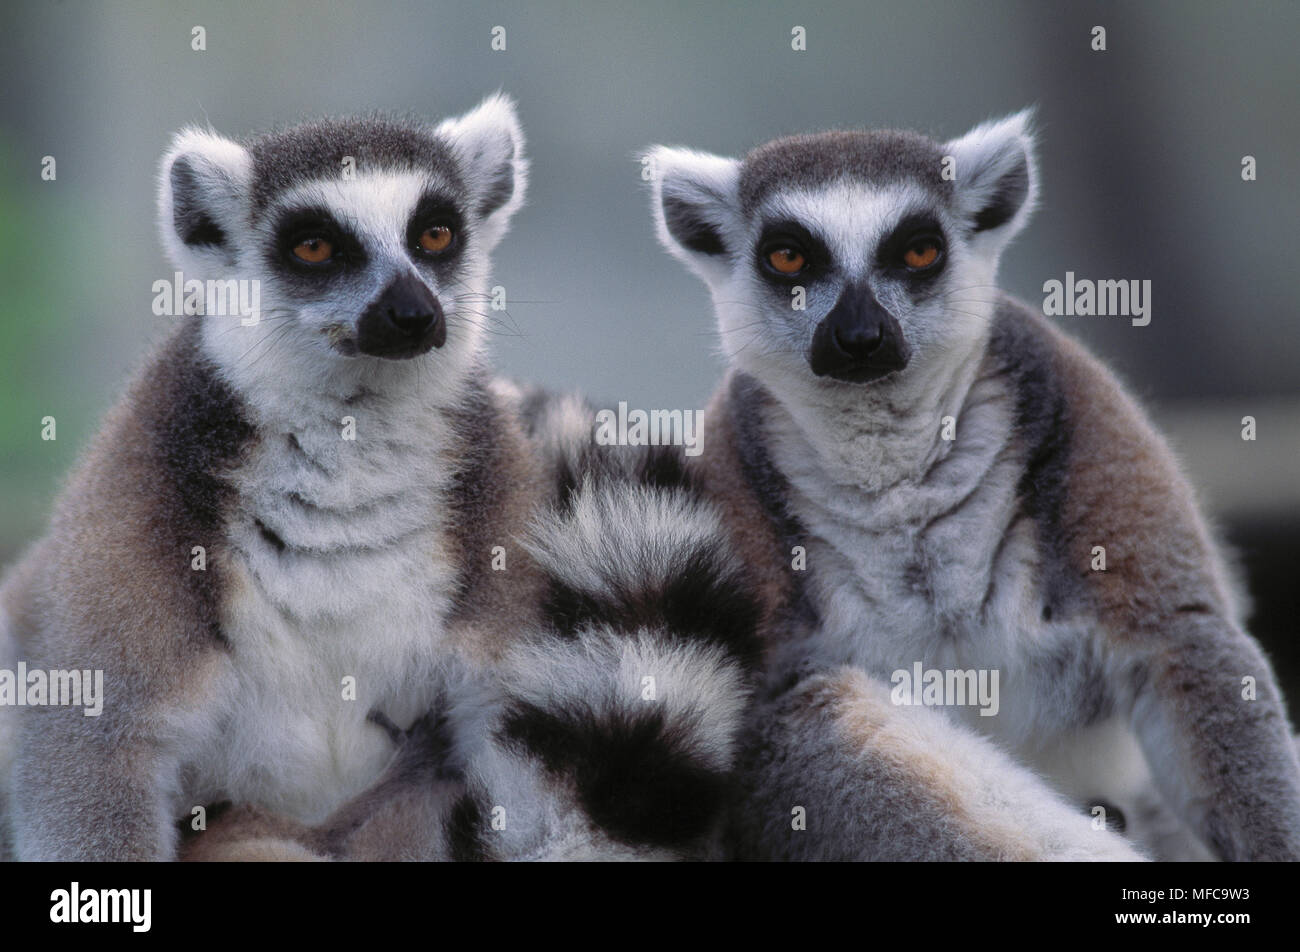 RING-TAILED LEMURS Lemur catta Madagascar Stock Photo